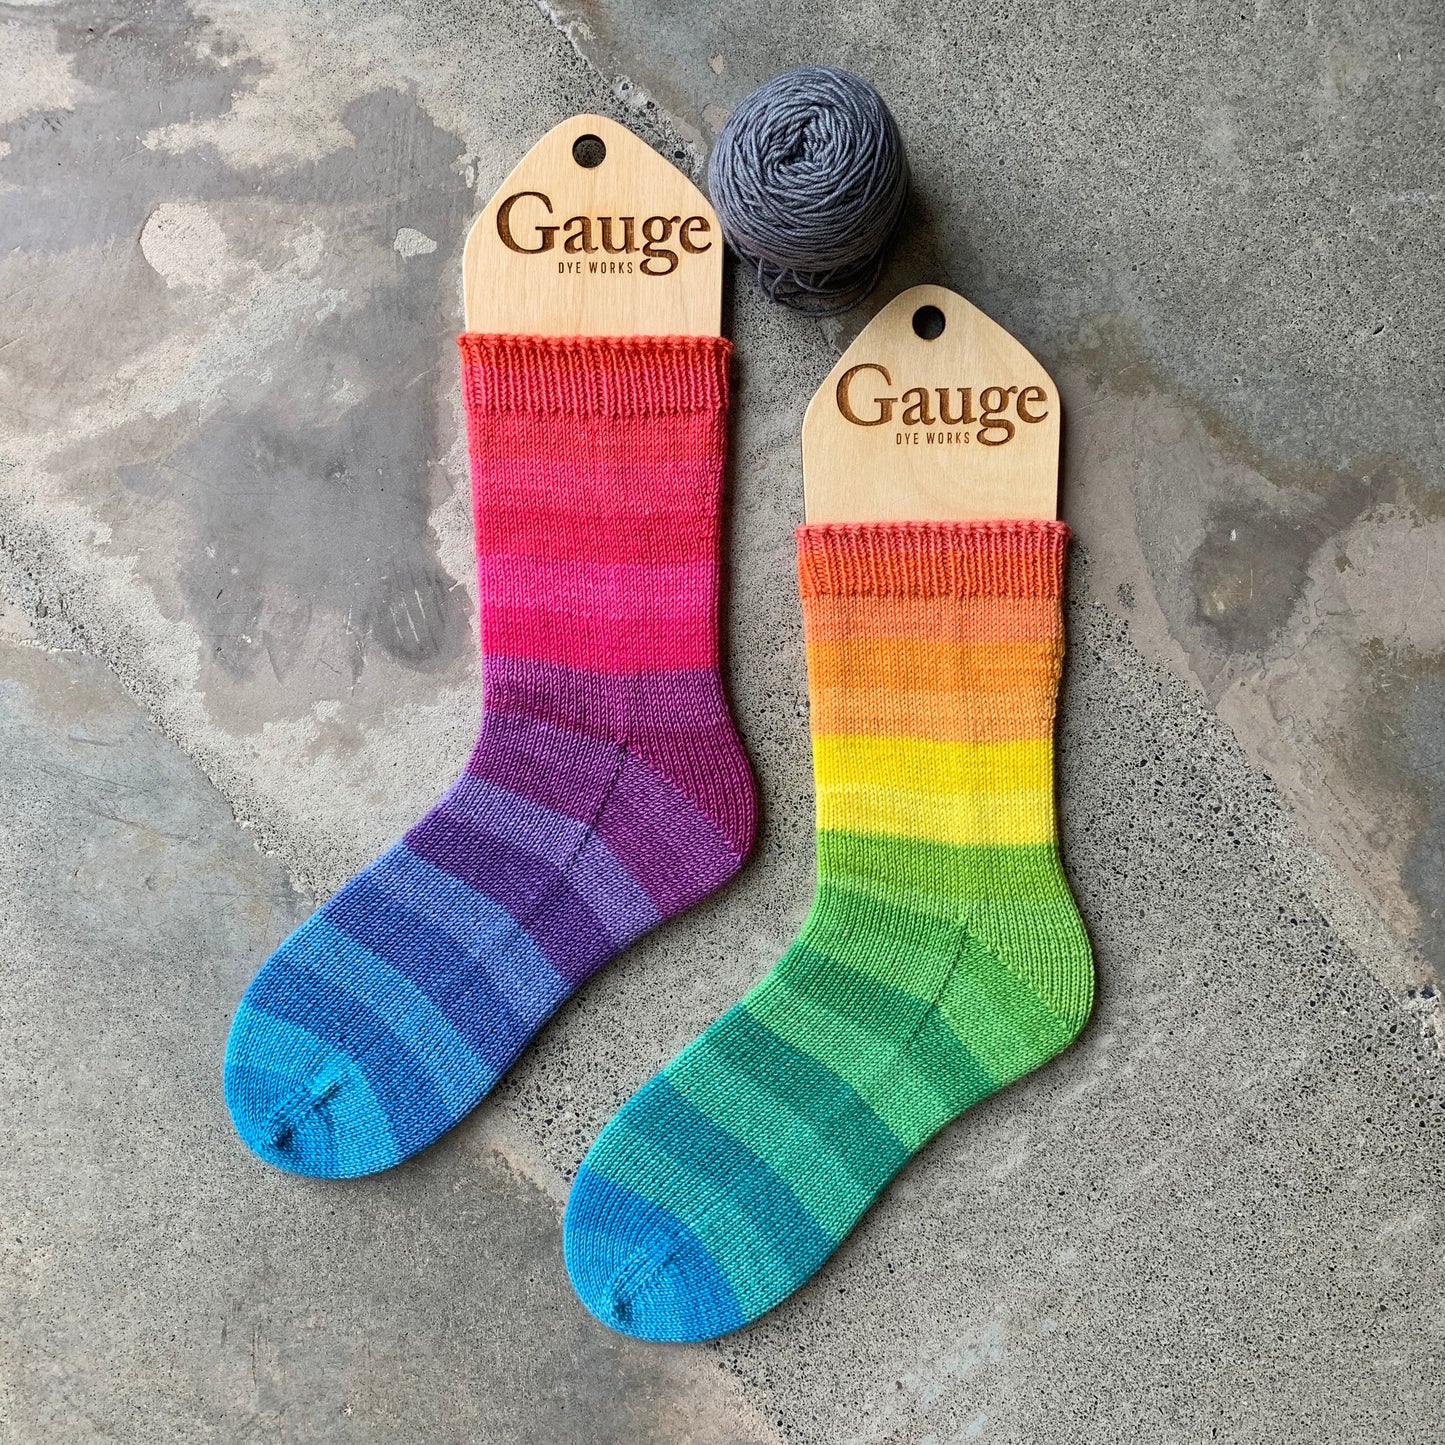 colourwheel sock yarn gauge dye works knitted socks